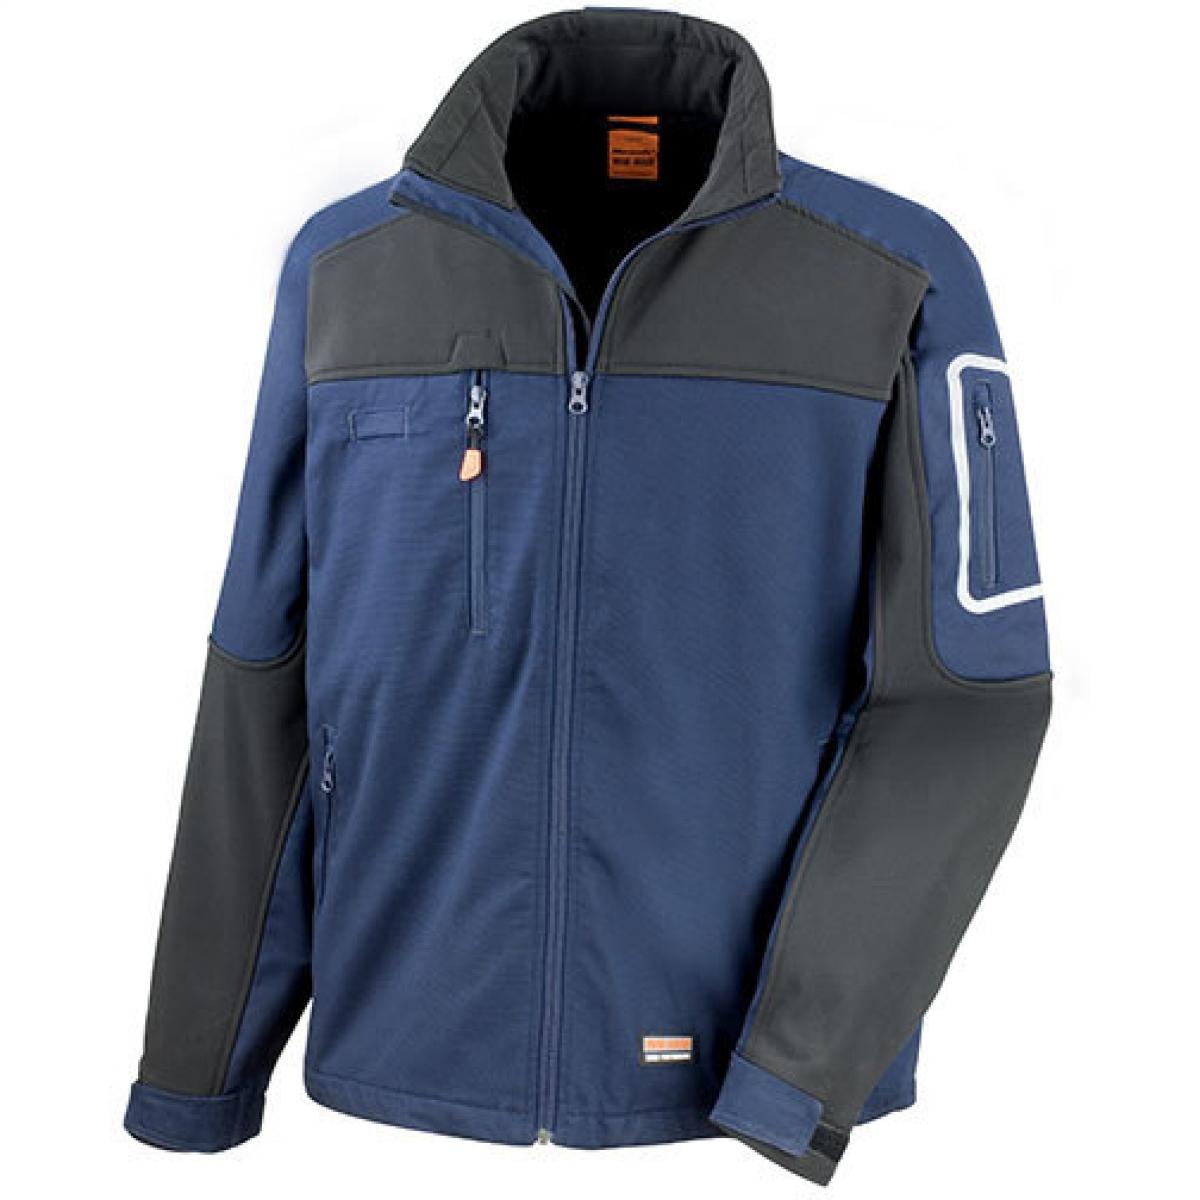 Hersteller: Result WORK-GUARD Herstellernummer: R302X Artikelbezeichnung: Sabre Stretch Jacke Farbe: Navy/Black